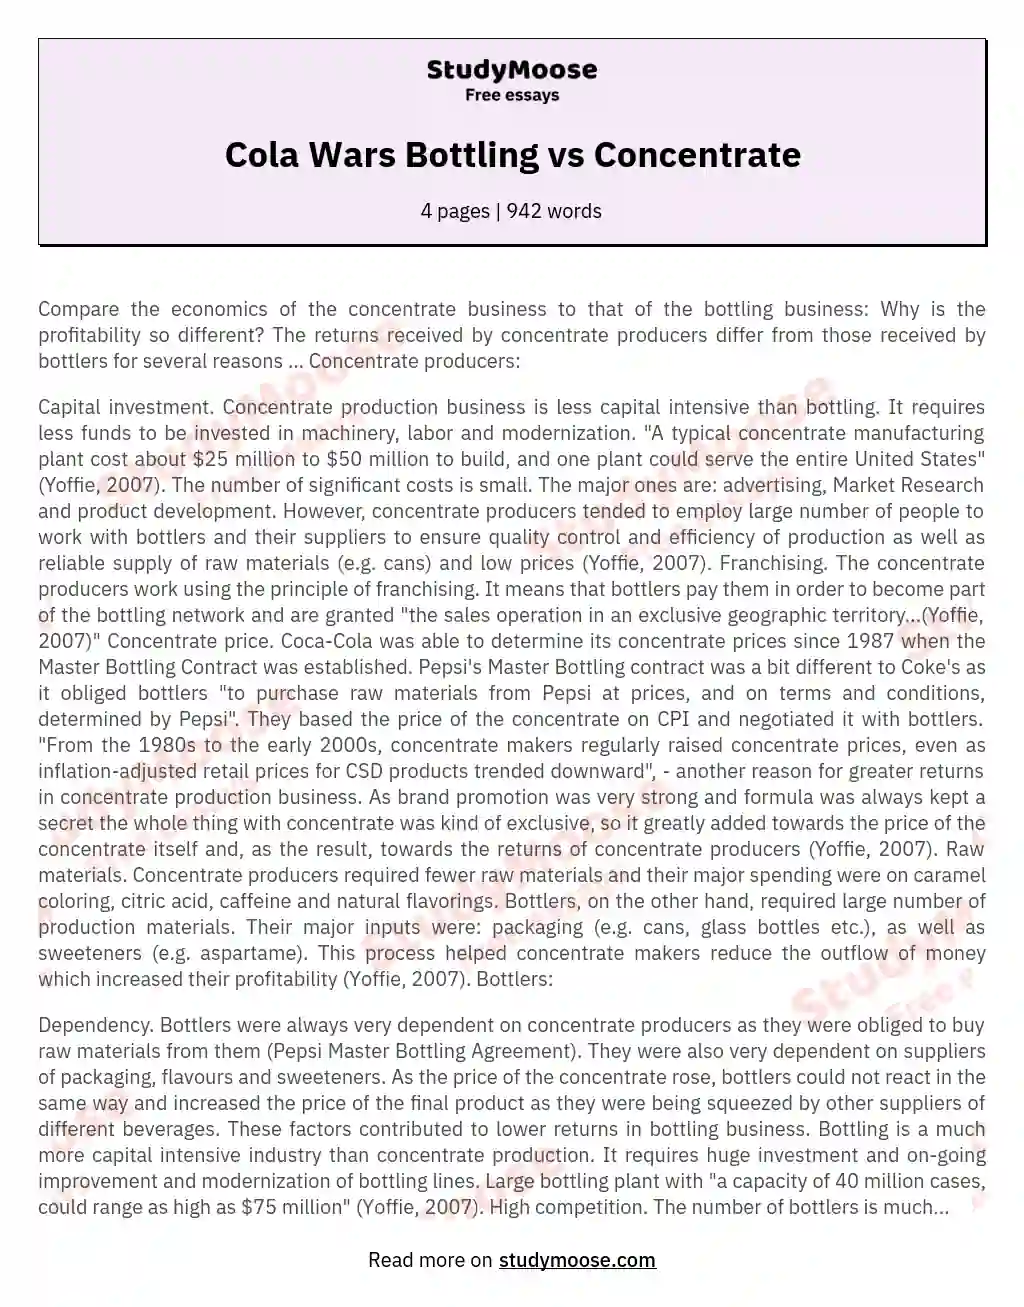 Cola Wars Bottling vs Concentrate essay